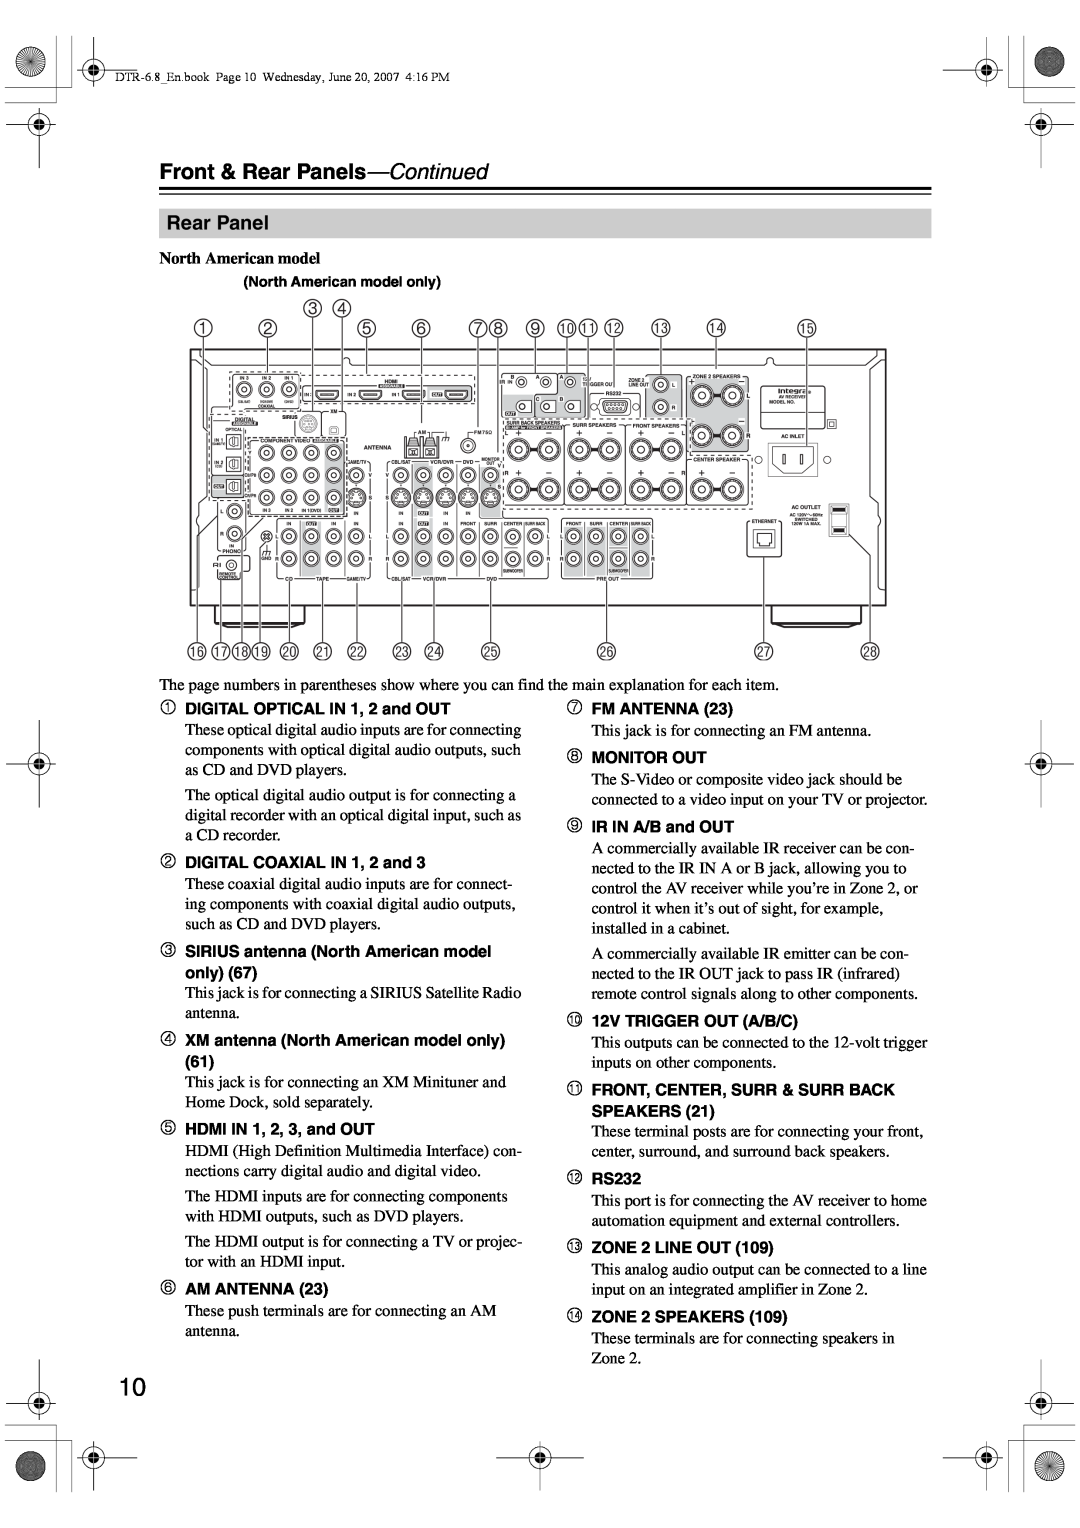 Integra DTR-6.8 instruction manual 78 9 bkblbm 